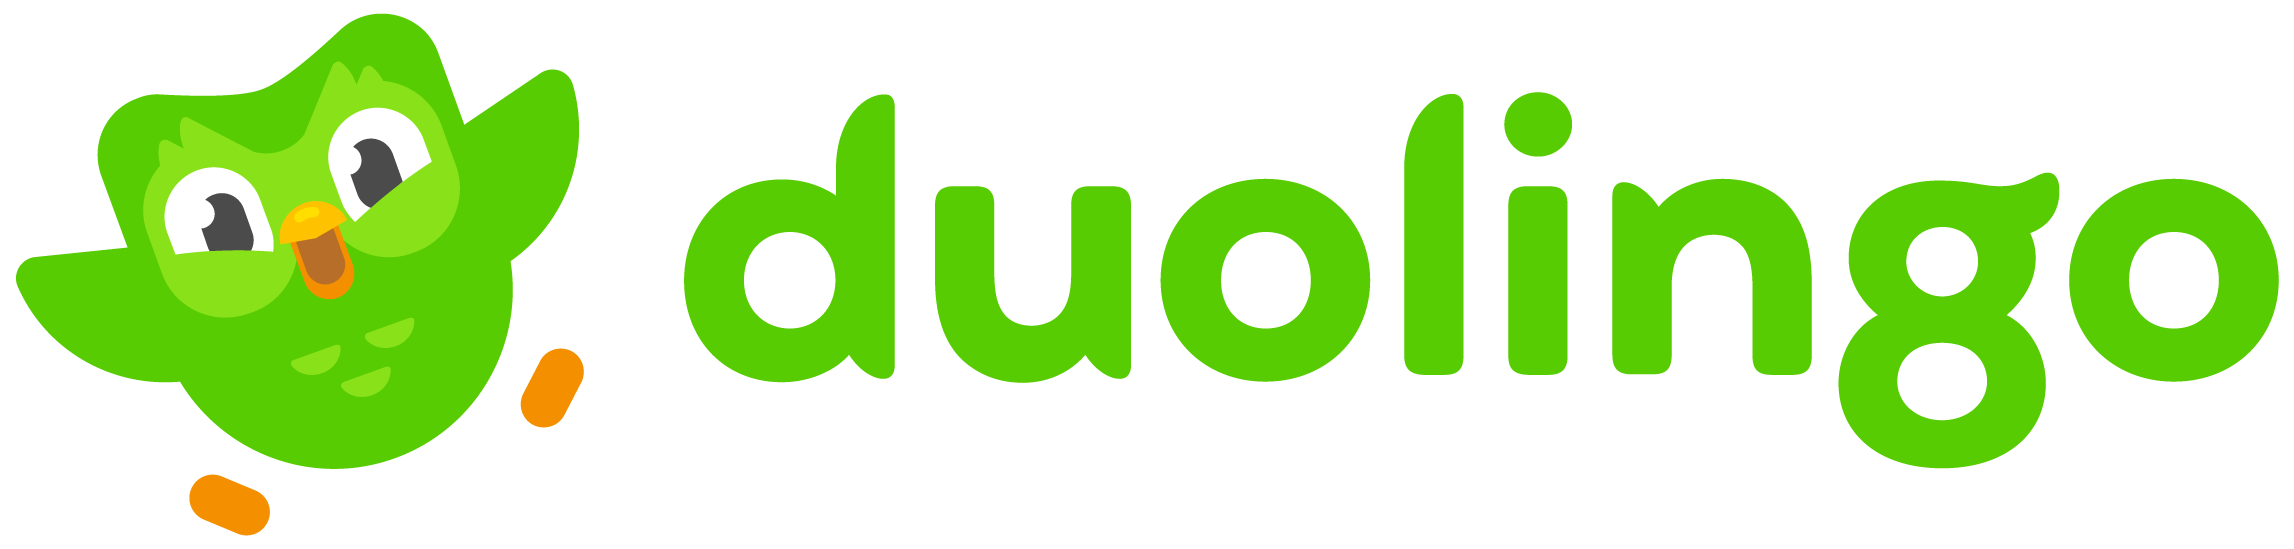 Duolingo logo colors